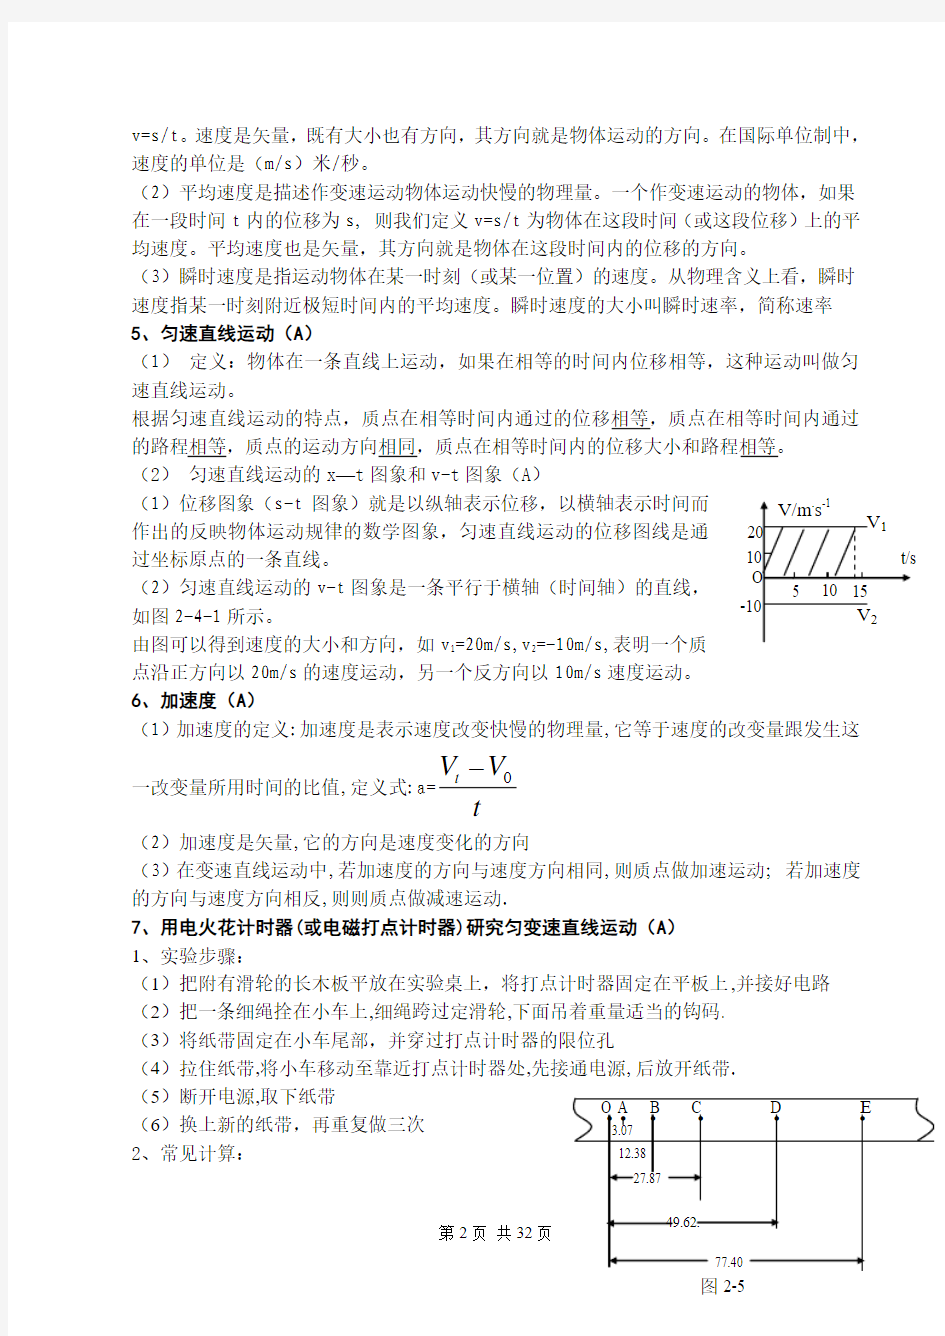 2014江苏省高中学业水平测试小高考物理考点解读(经典打印版)